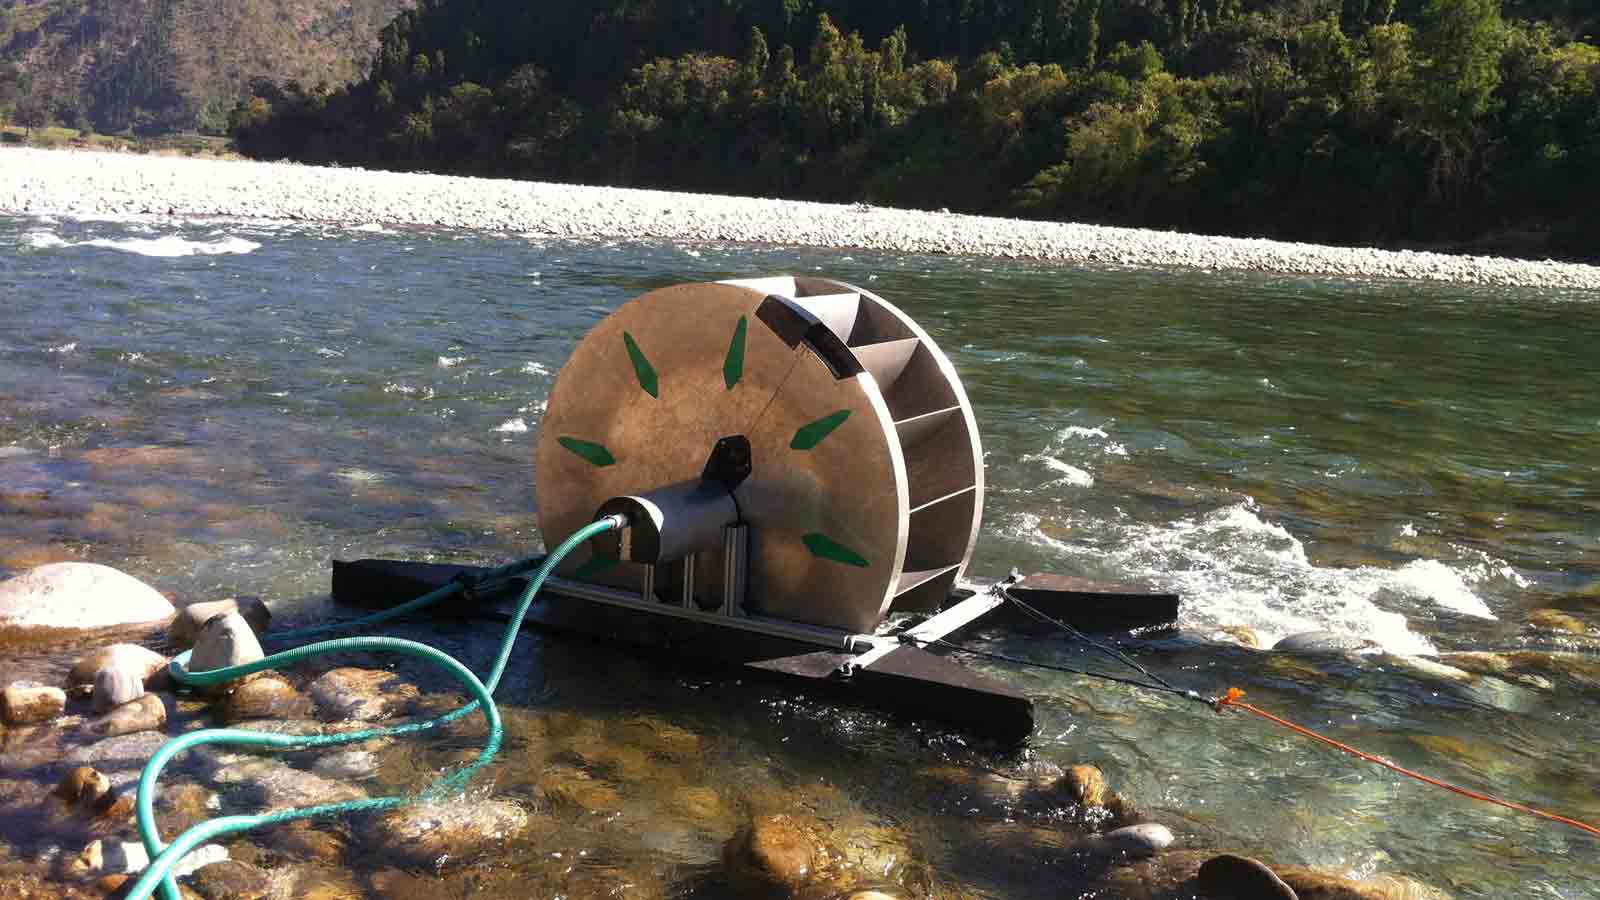 Turbine in the river